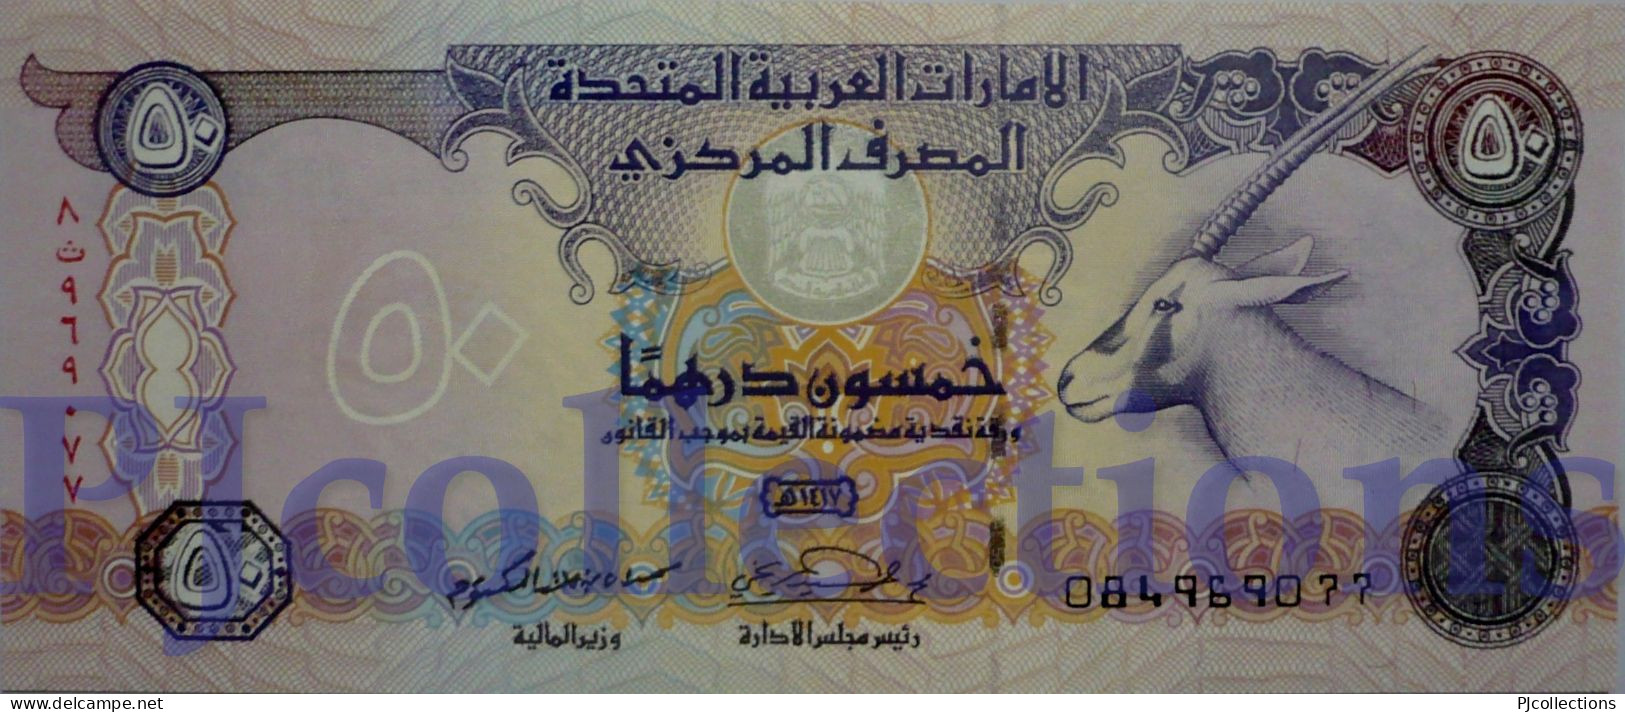 UNITED ARAB EMIRATES 50 DIRHAMS 1996 PICK 14b UNC - Ver. Arab. Emirate